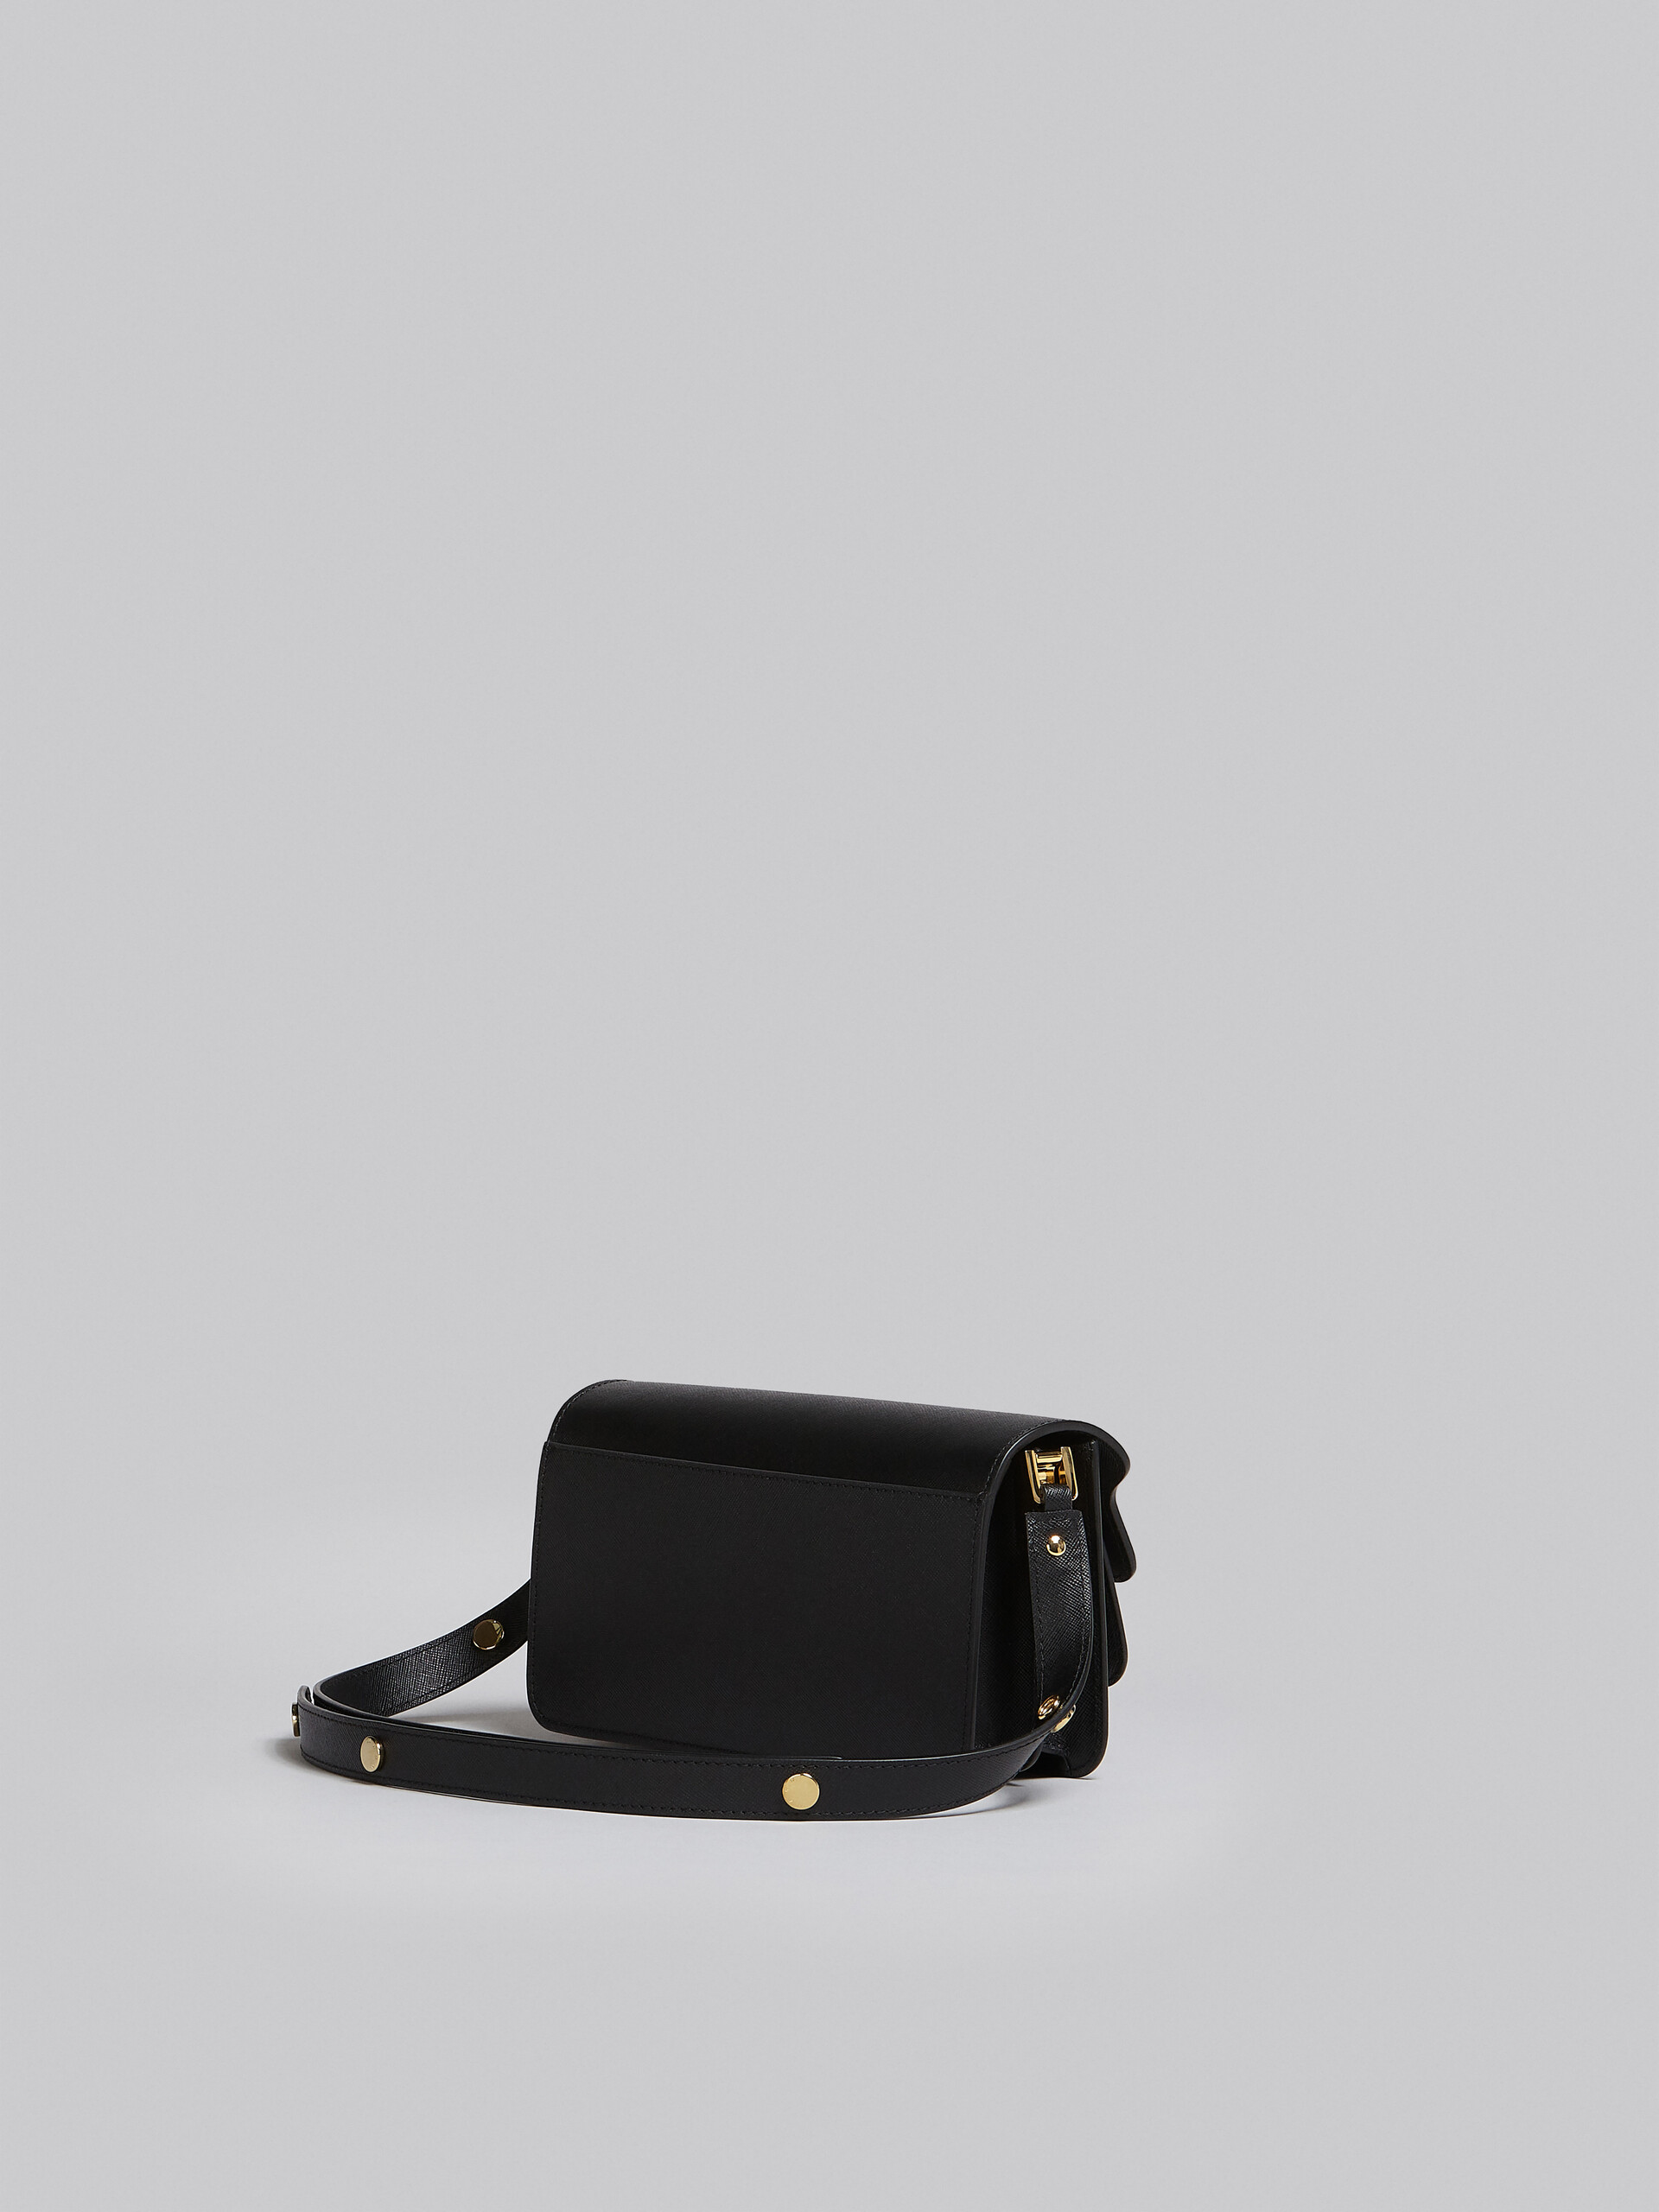 Trunk Bag E/W in black saffiano leather - Shoulder Bag - Image 2